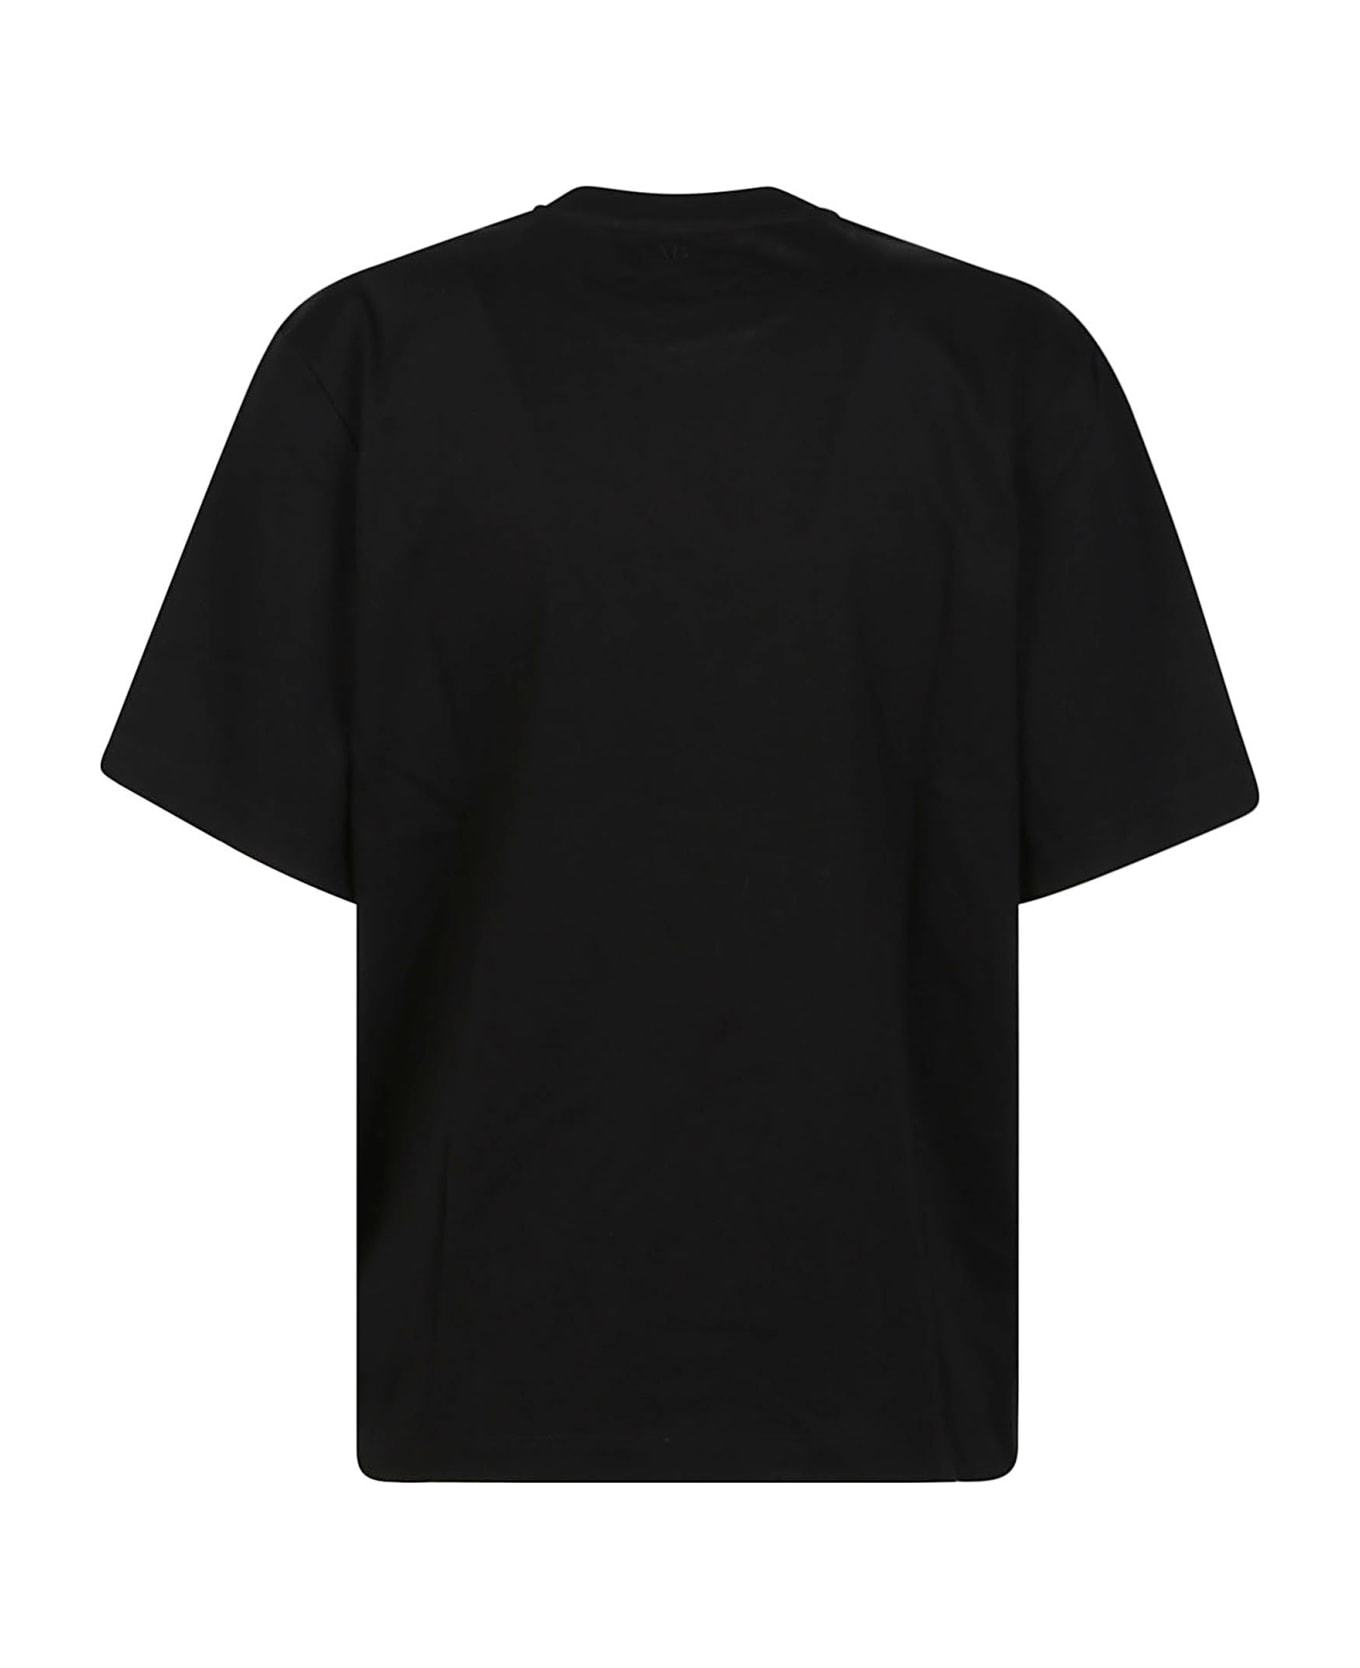 Victoria Beckham Twist Front T-shirt - Black